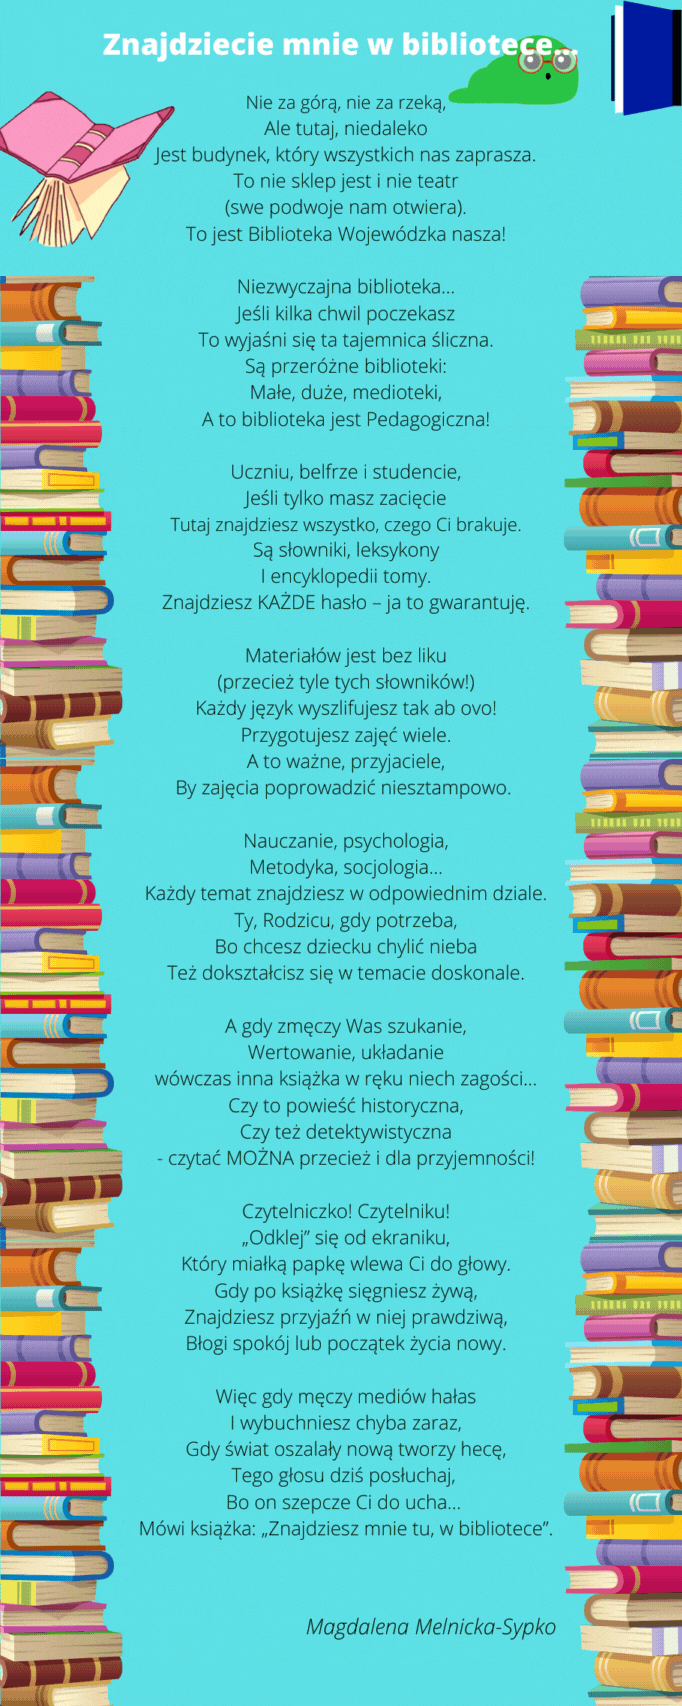 Tekst wiersza "Znajdziecie mnie w bibliotece" w otoczeniu animowanych książek.